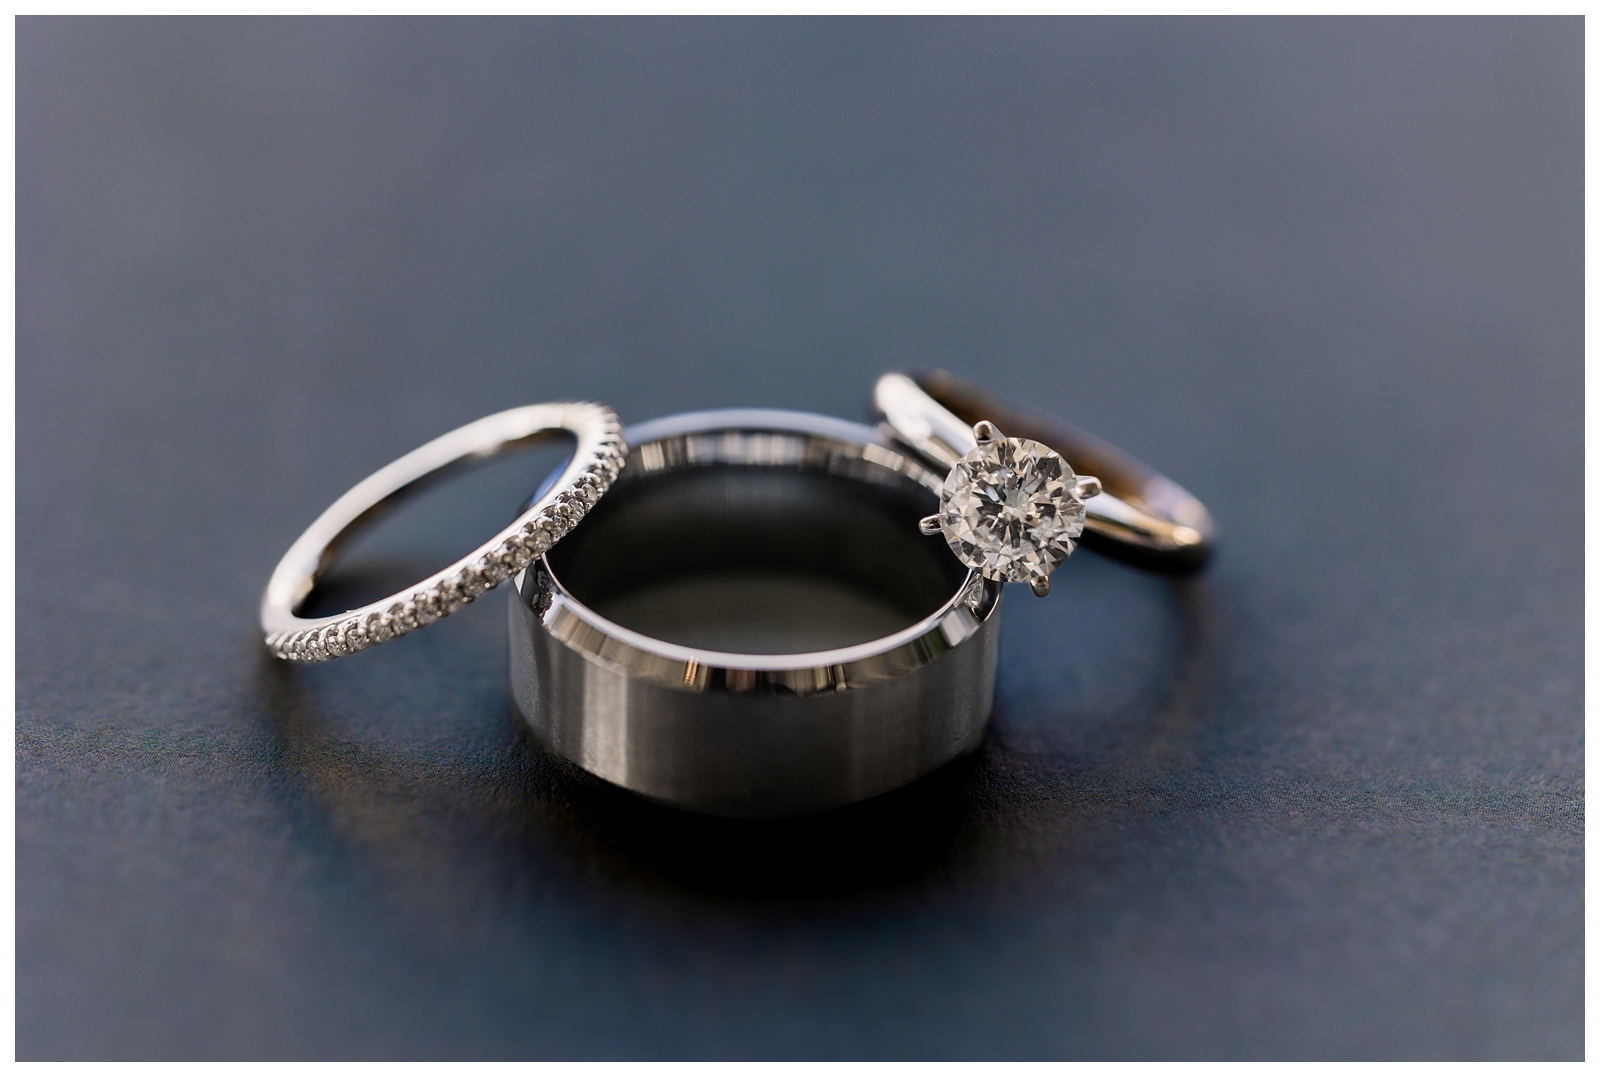 Wedding ring detail photos